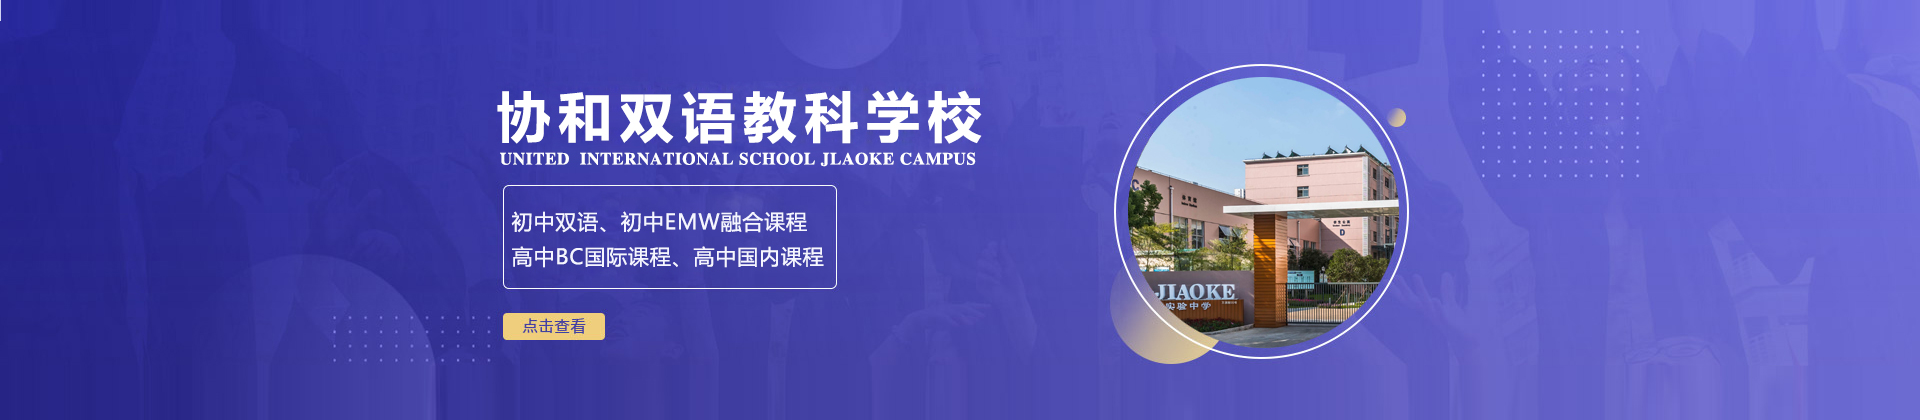 上海闵行区协和双语教科学校